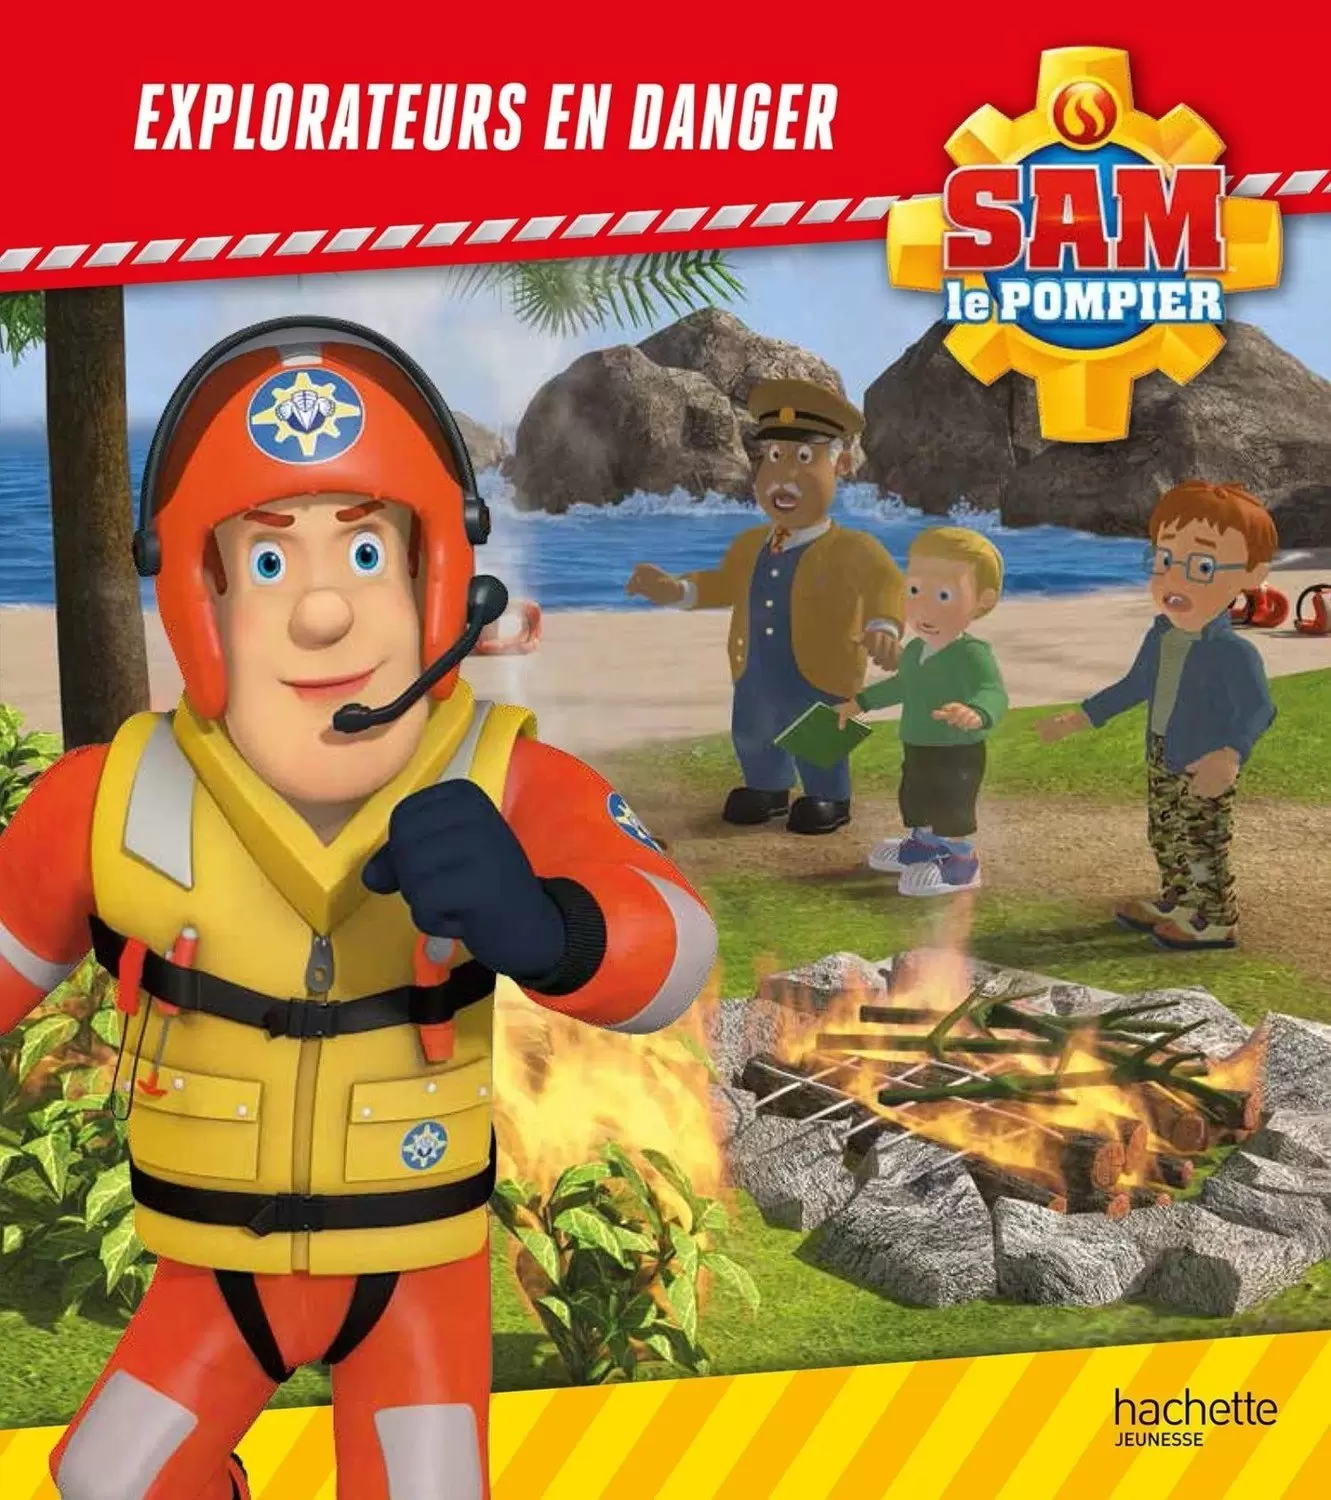 Sam le pompier - Explorateurs en danger